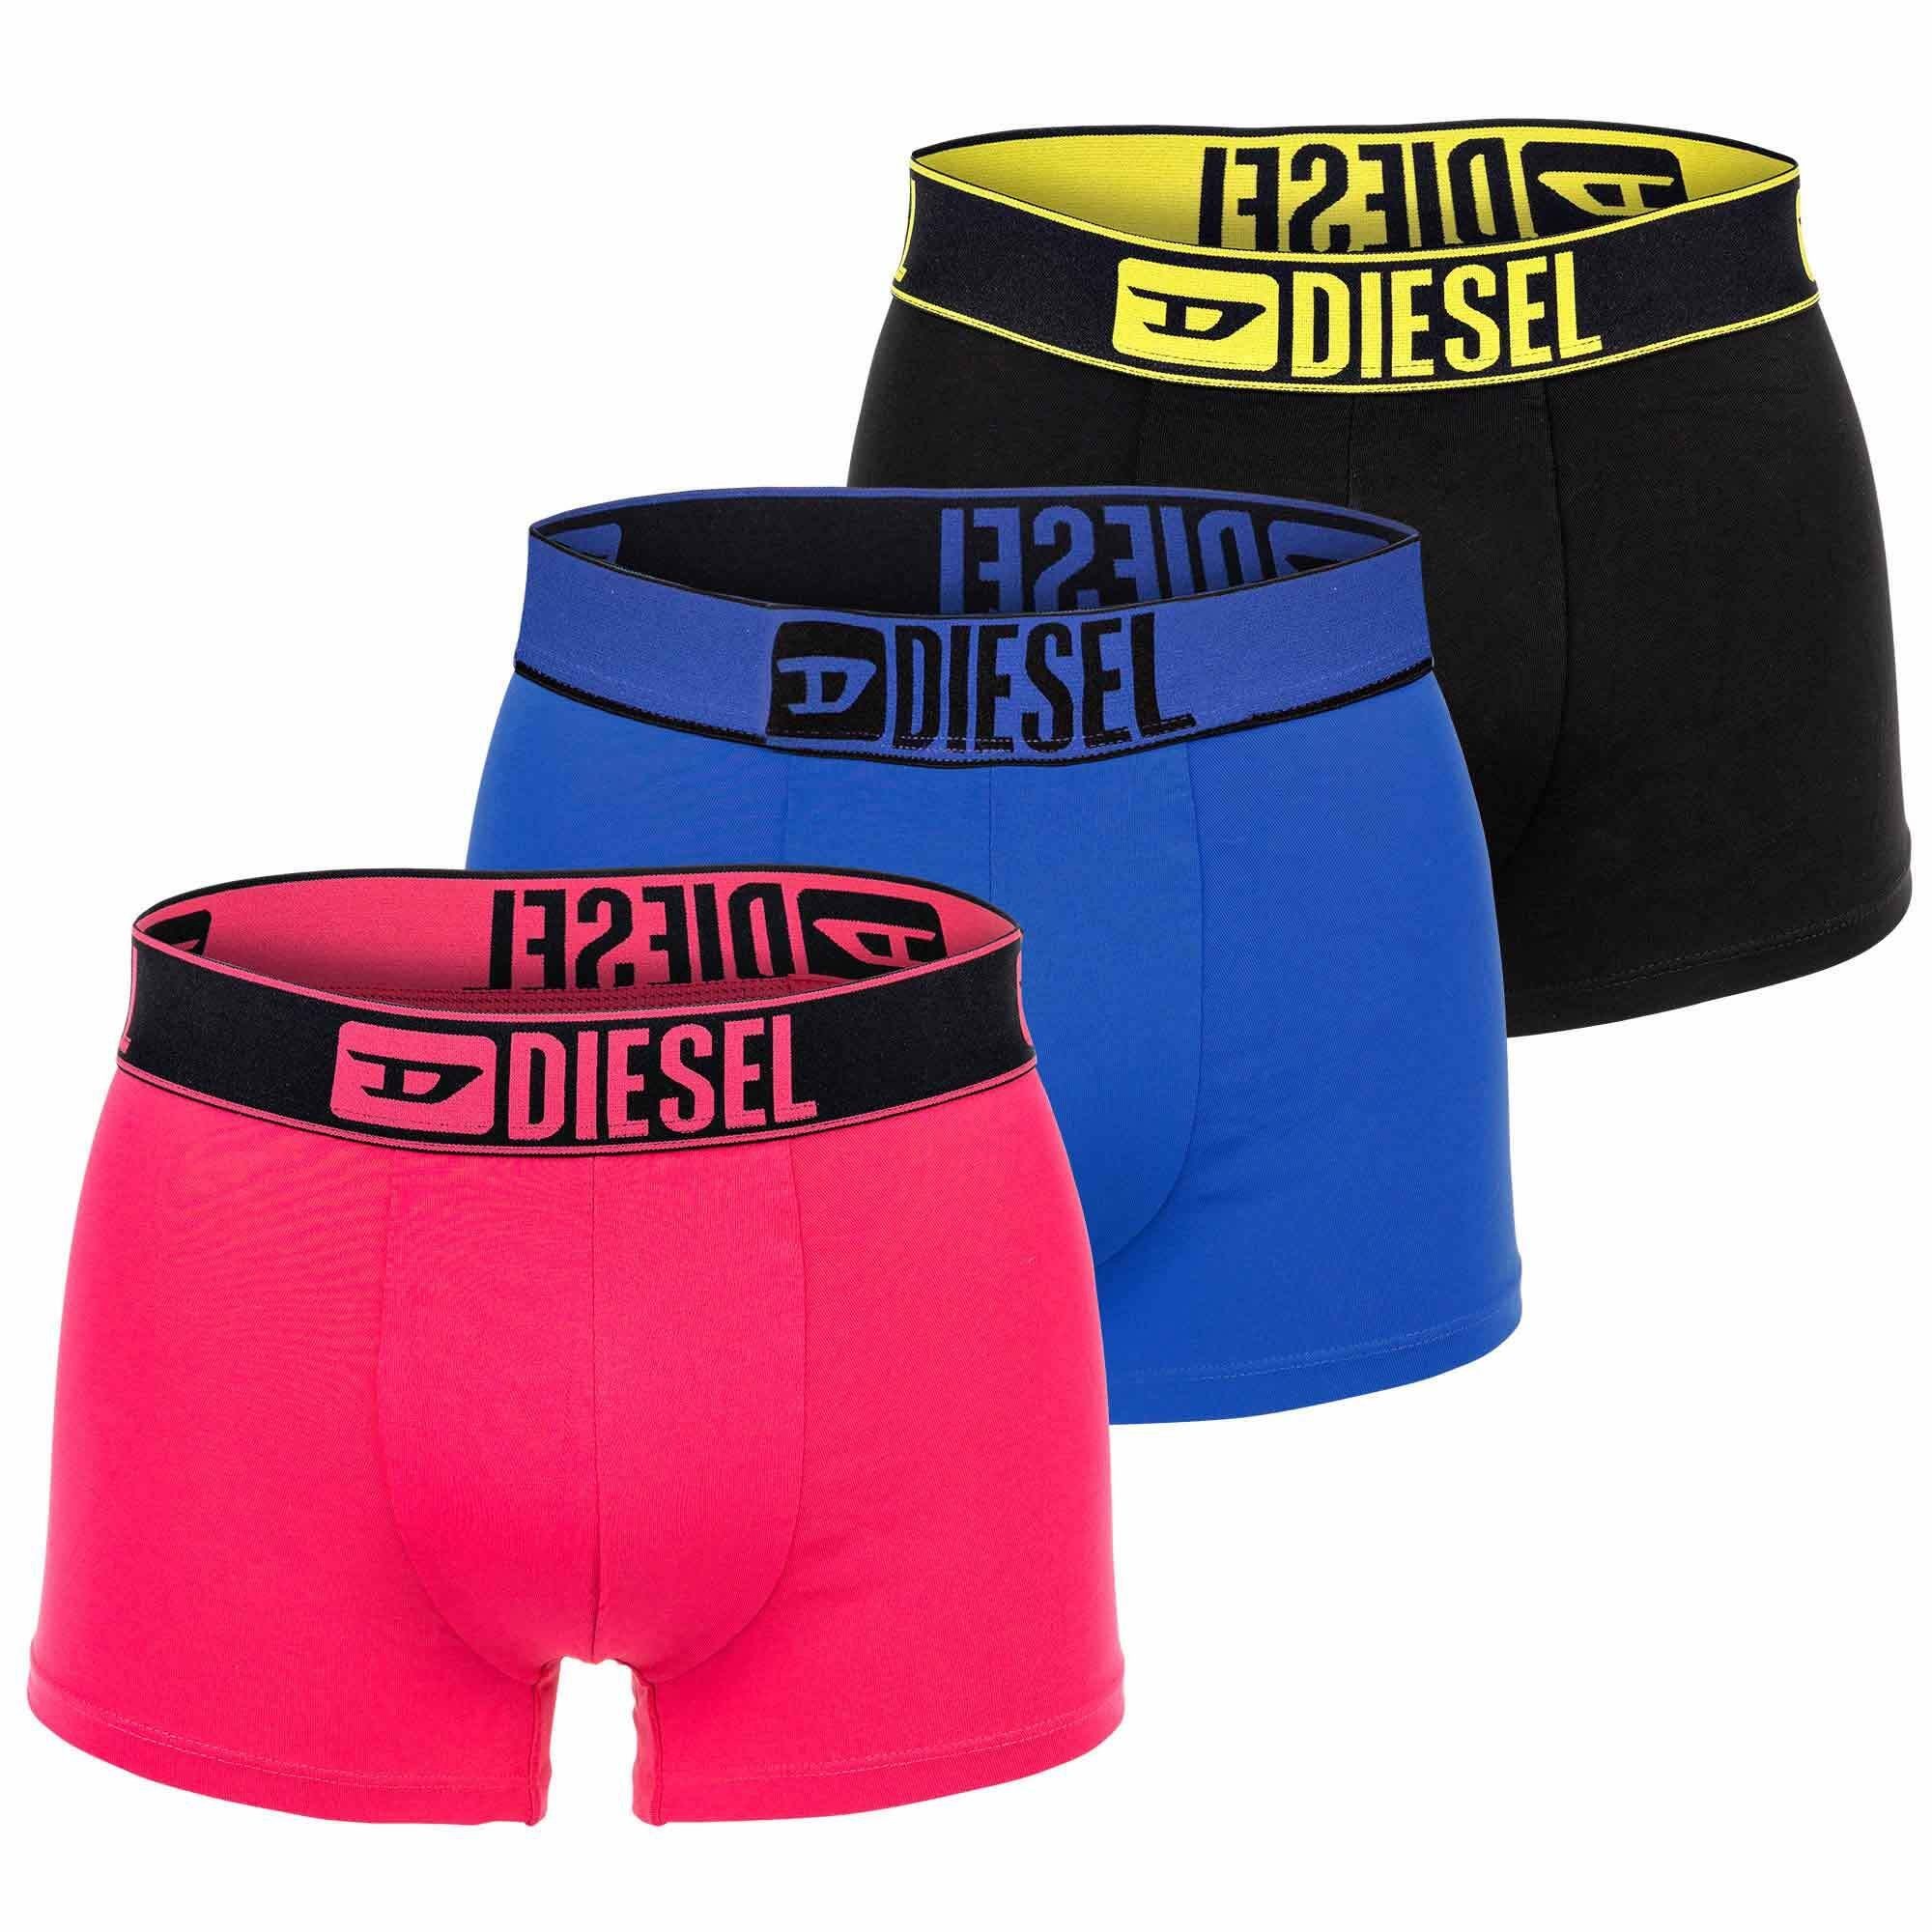 Diesel Boxer Herren Boxershorts, 3er Pack - Blau/Pink/Schwarz